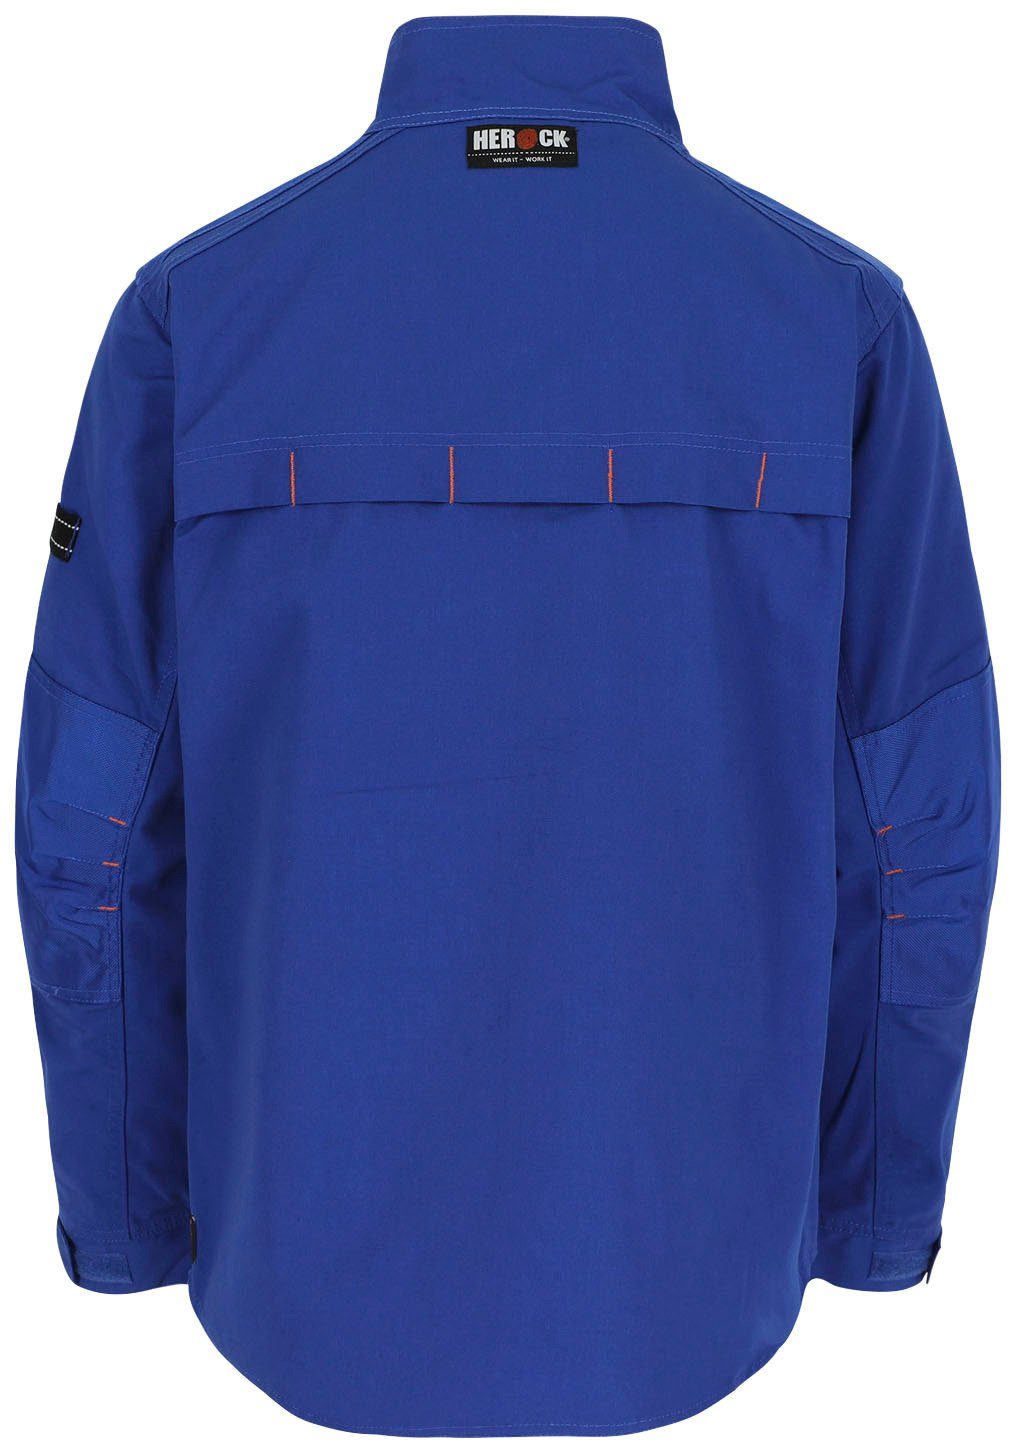 Taschen verstellbare - Bündchen Arbeitsjacke - robust blau Jacke Wasserabweisend Herock - 7 Anzar